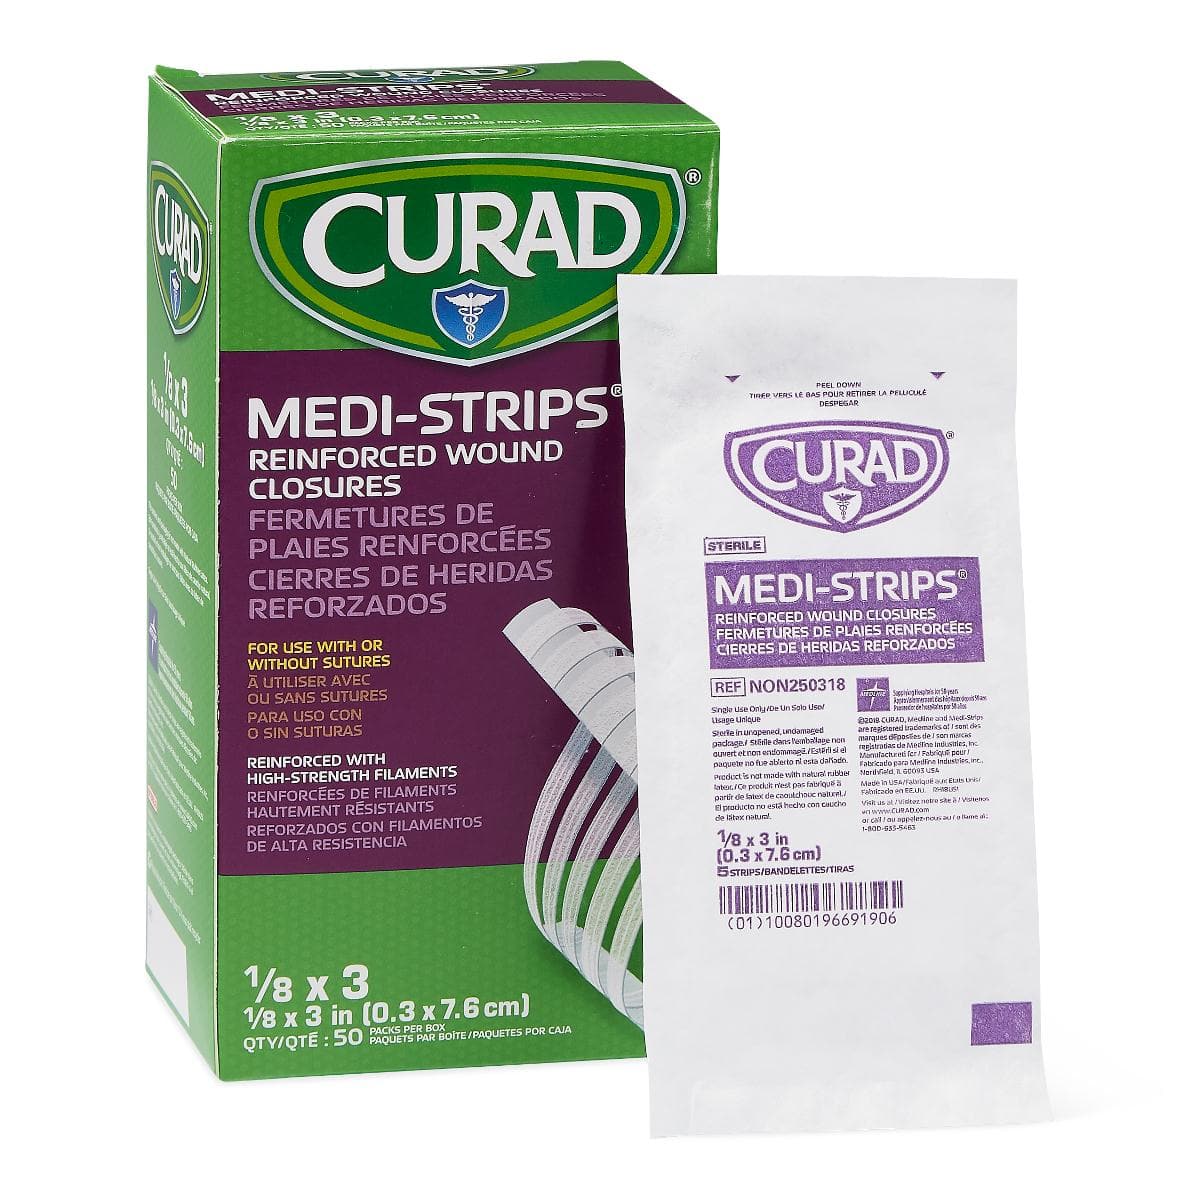 Medline 1/8"x3" / Box of 50 Packs Medline CURAD Medi-Strip Reinforced Wound Closures